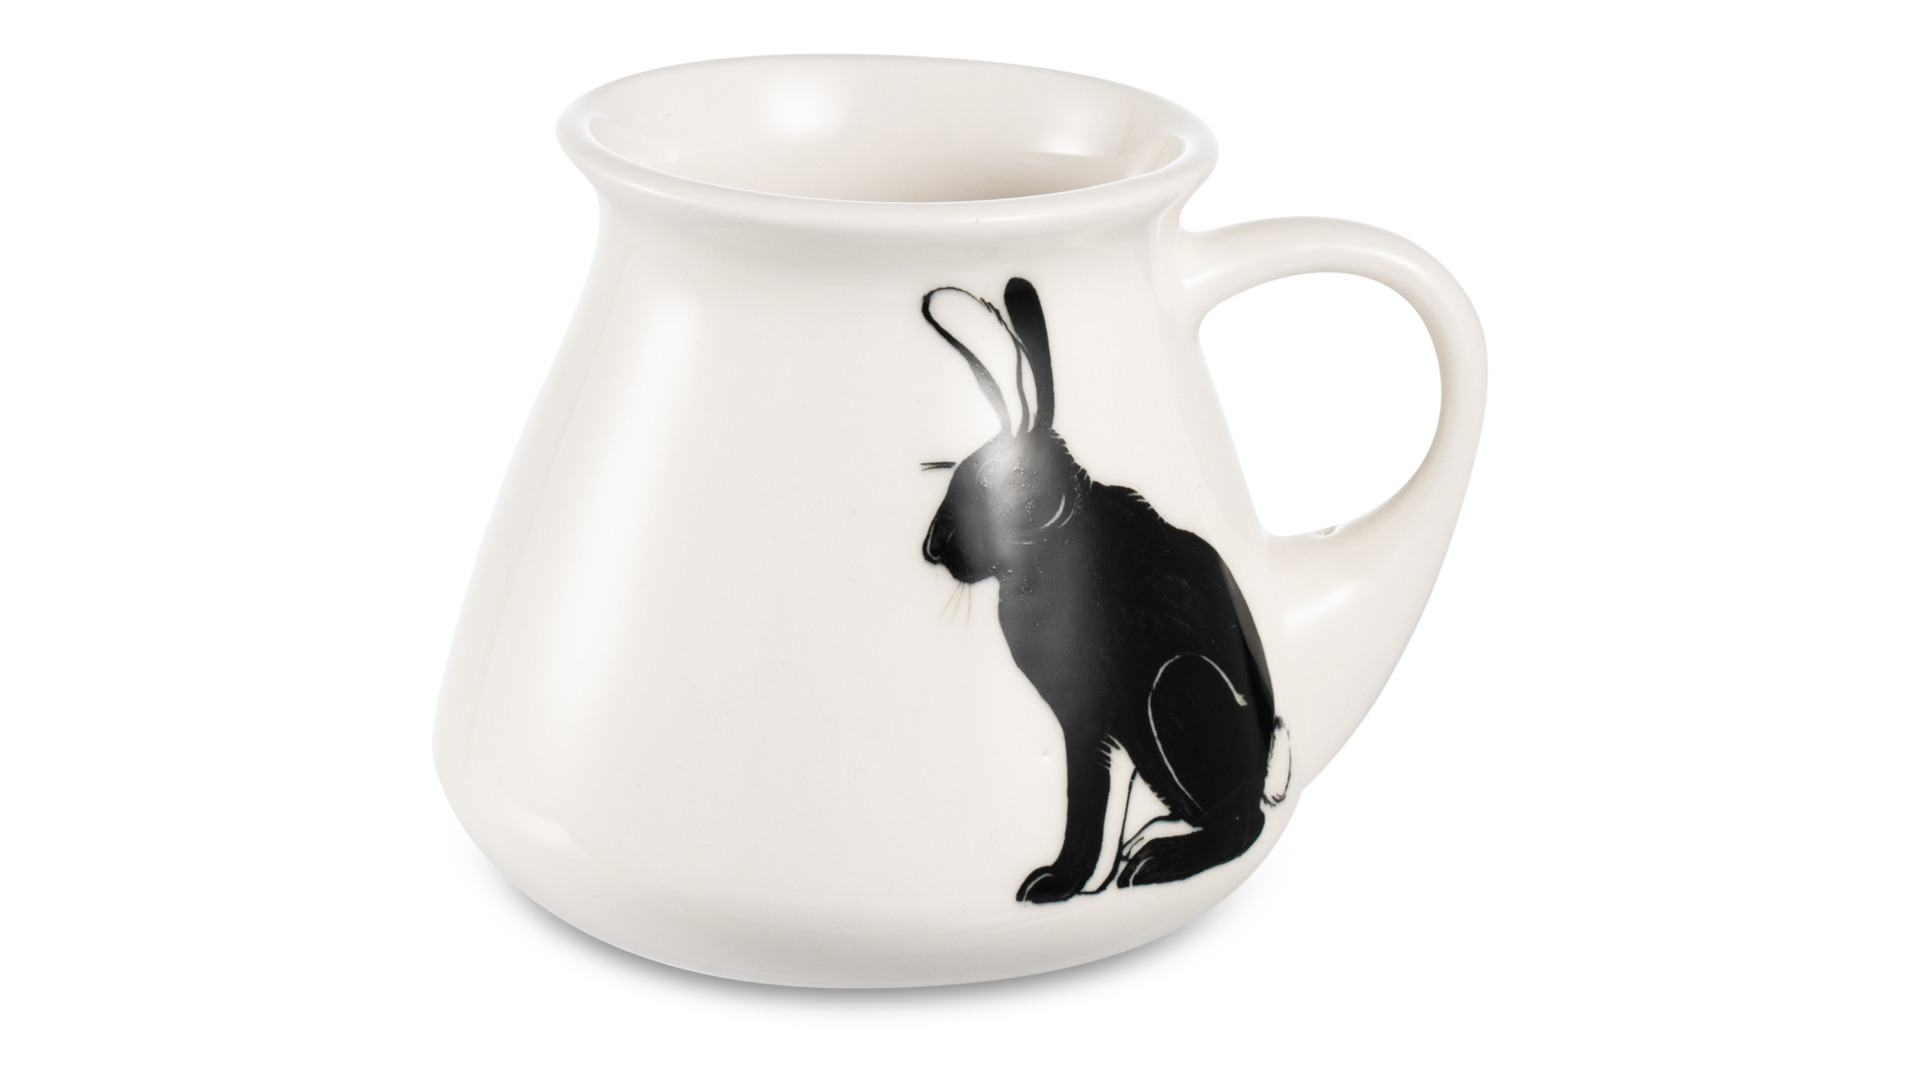 Чашка чайная с блюдцем Терра Керамос Турка Граффика-кролик, подглазурная роспись, фарфор твердый